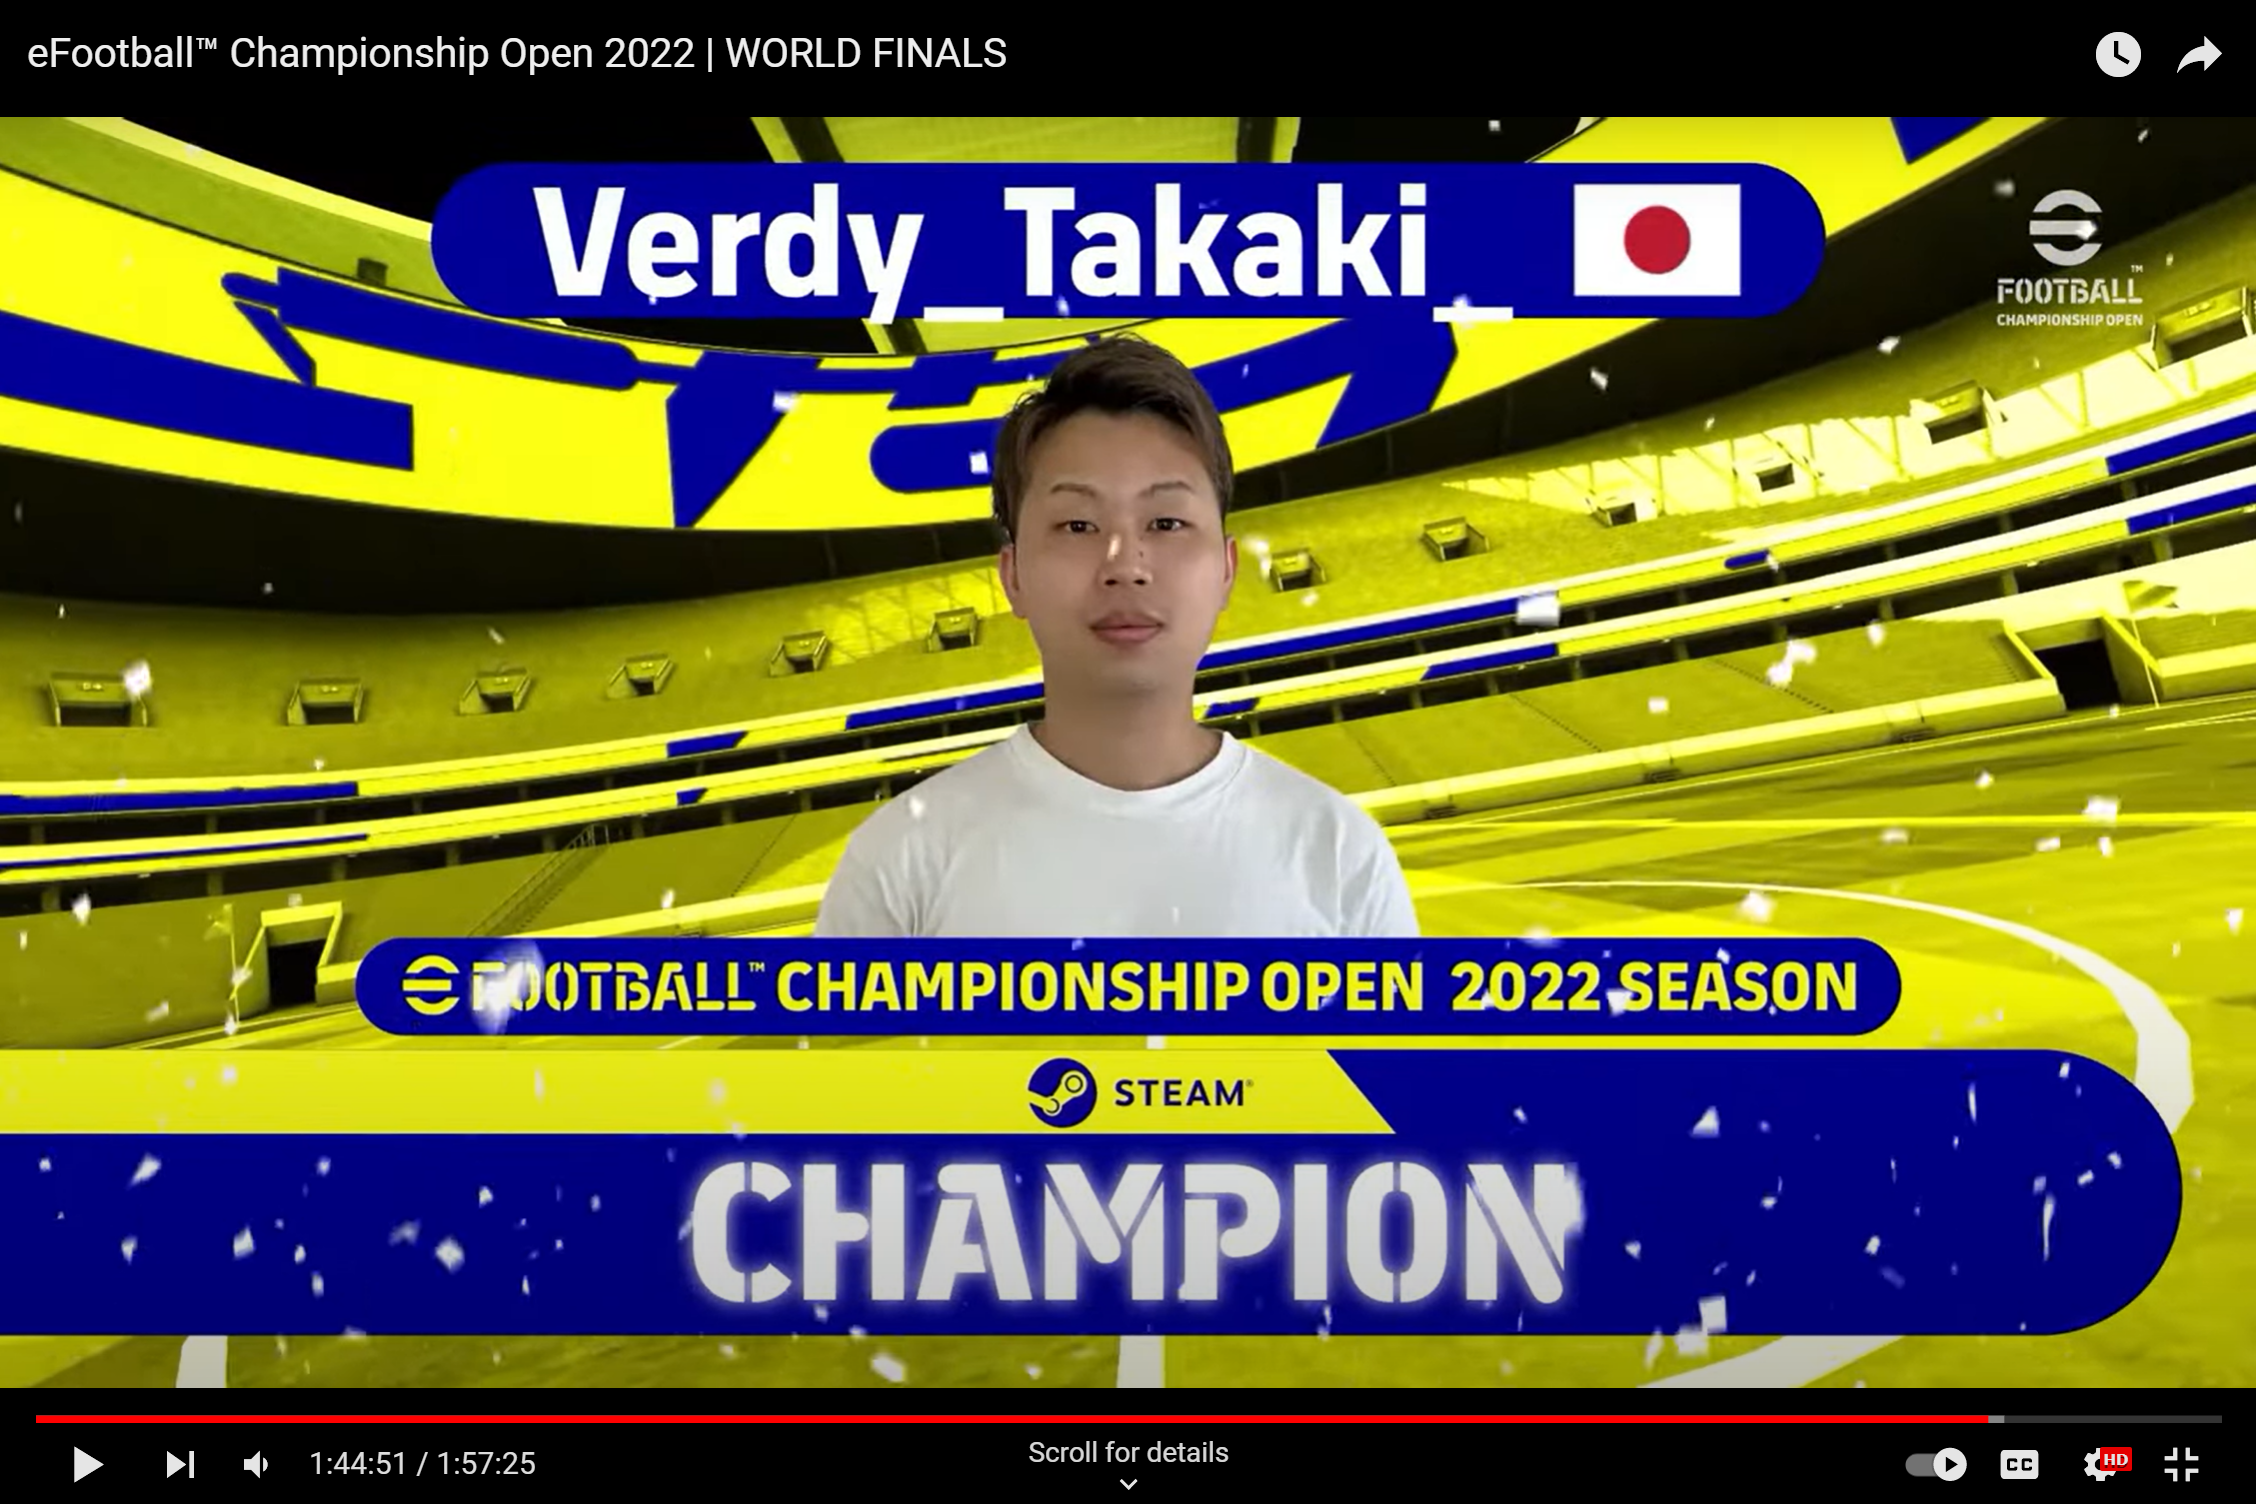 東京Veスポーツ部門のTakaki選手、アジア代表として臨んだ「eFootball Campionship Open 2022 Wolrd Finals」で見事優勝!世界一に